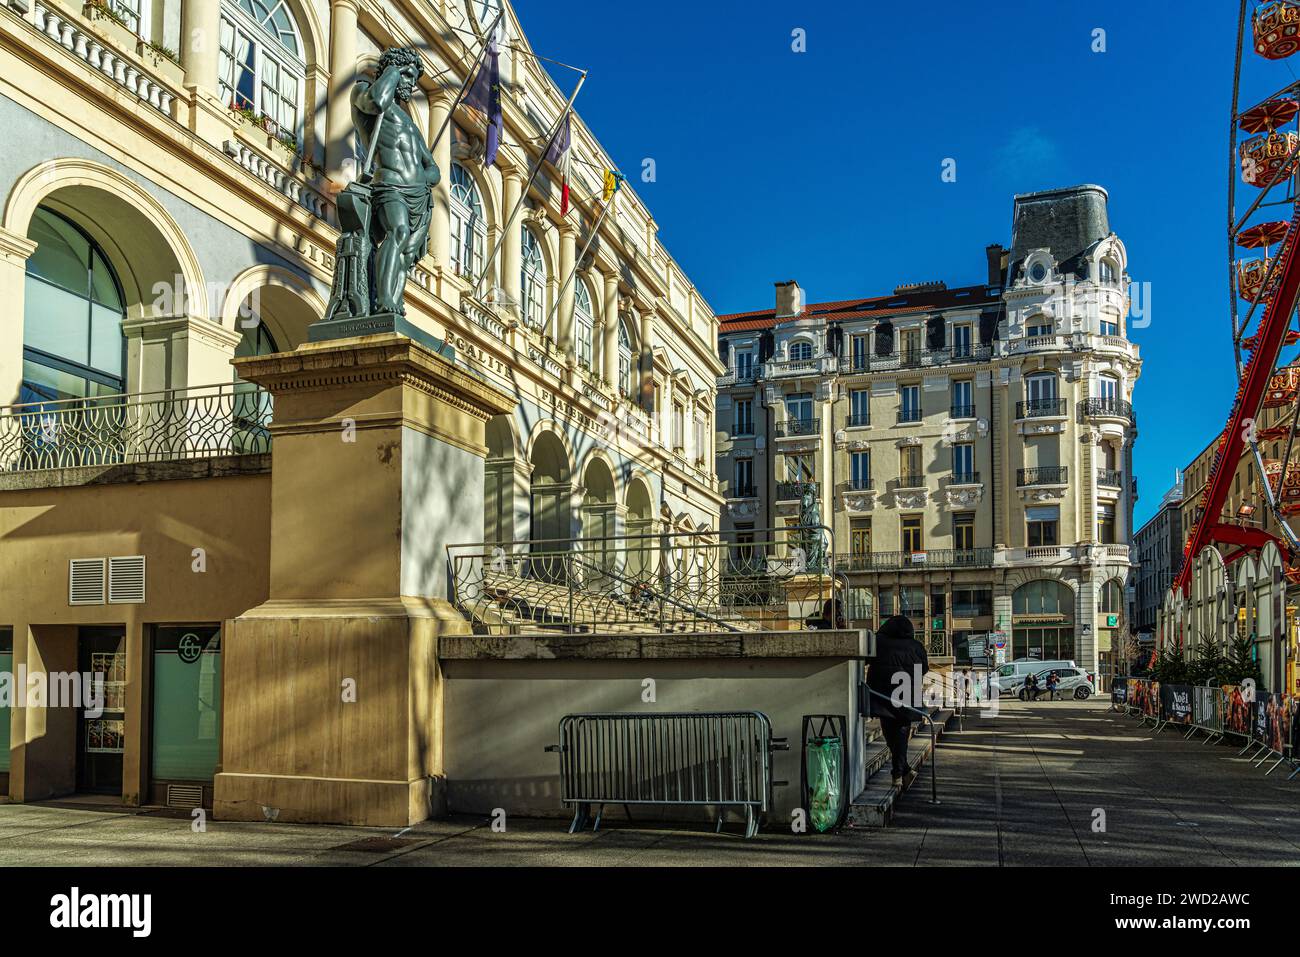 Fassade und Architektur des Hotels de Ville in Saint Etienne. Im Hintergrund ein barocker Palast mit Blick auf den Platz. Saint-Etienne, Francia Stockfoto